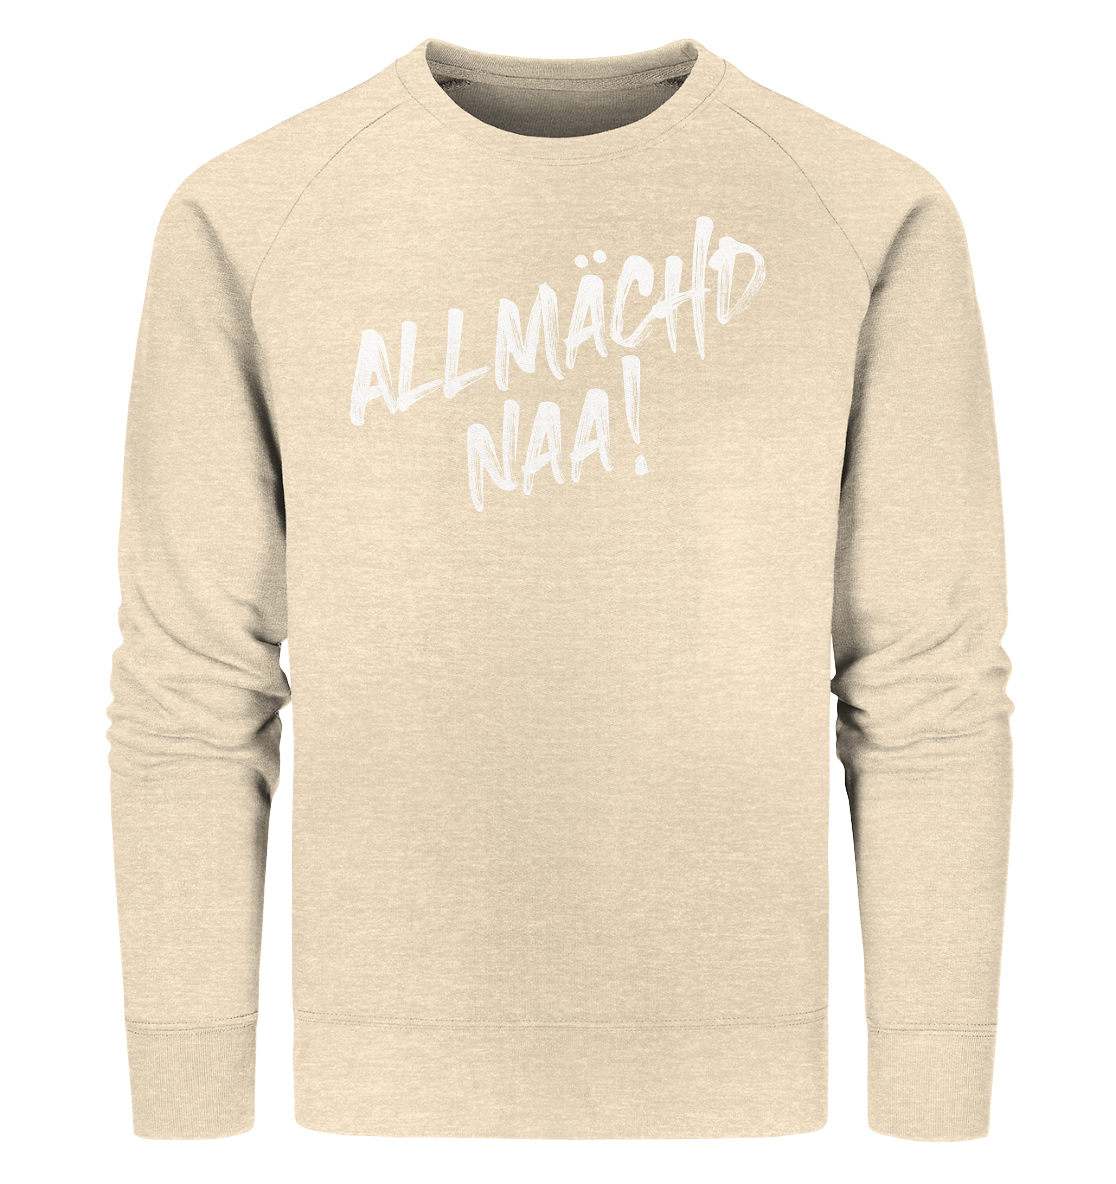 #ALLMÄCHD NAA! - Organic Sweatshirt